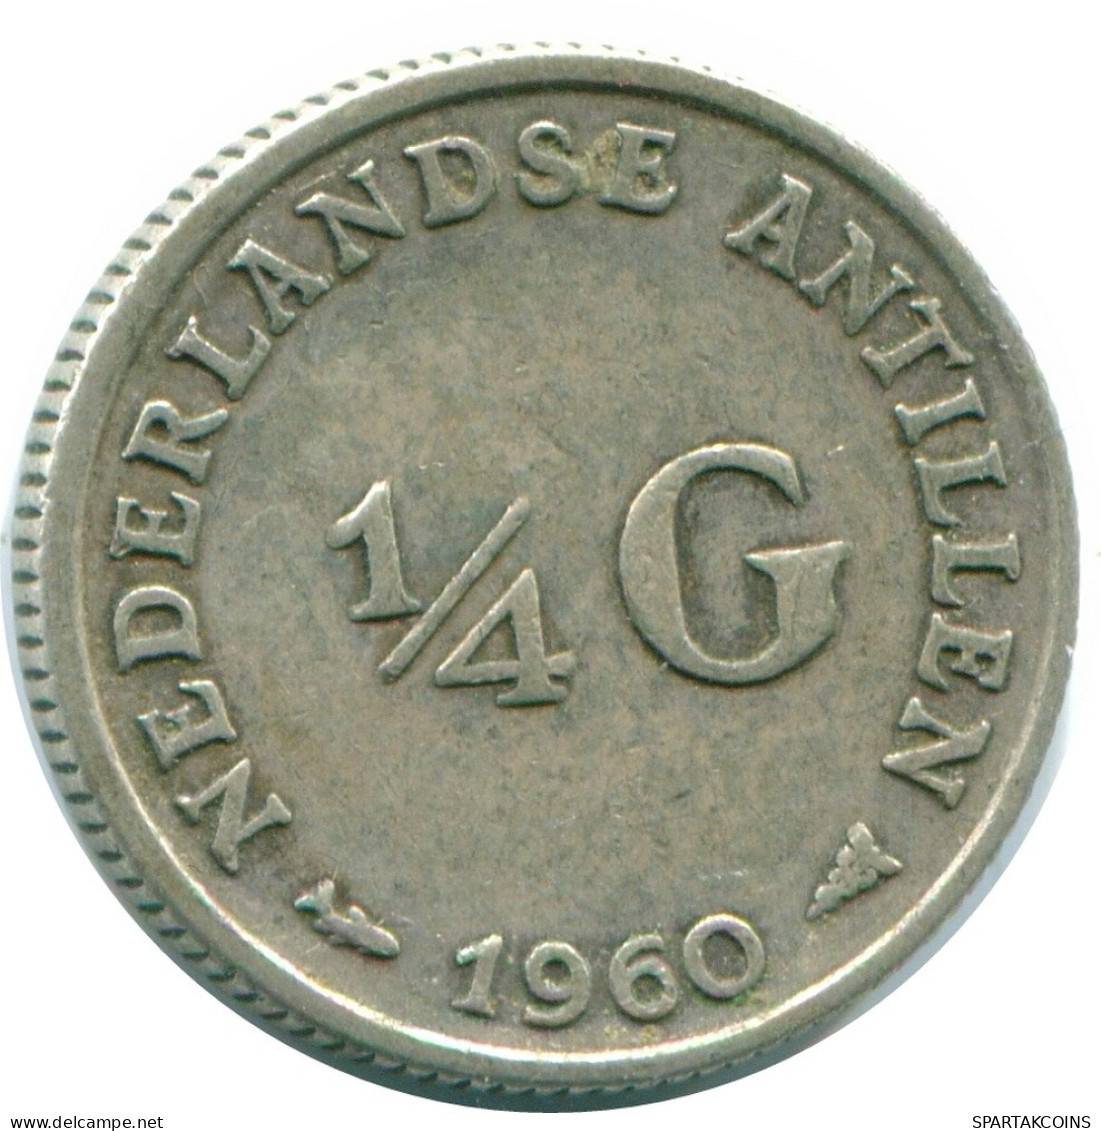 1/4 GULDEN 1960 NIEDERLÄNDISCHE ANTILLEN SILBER Koloniale Münze #NL11050.4.D.A - Antillas Neerlandesas